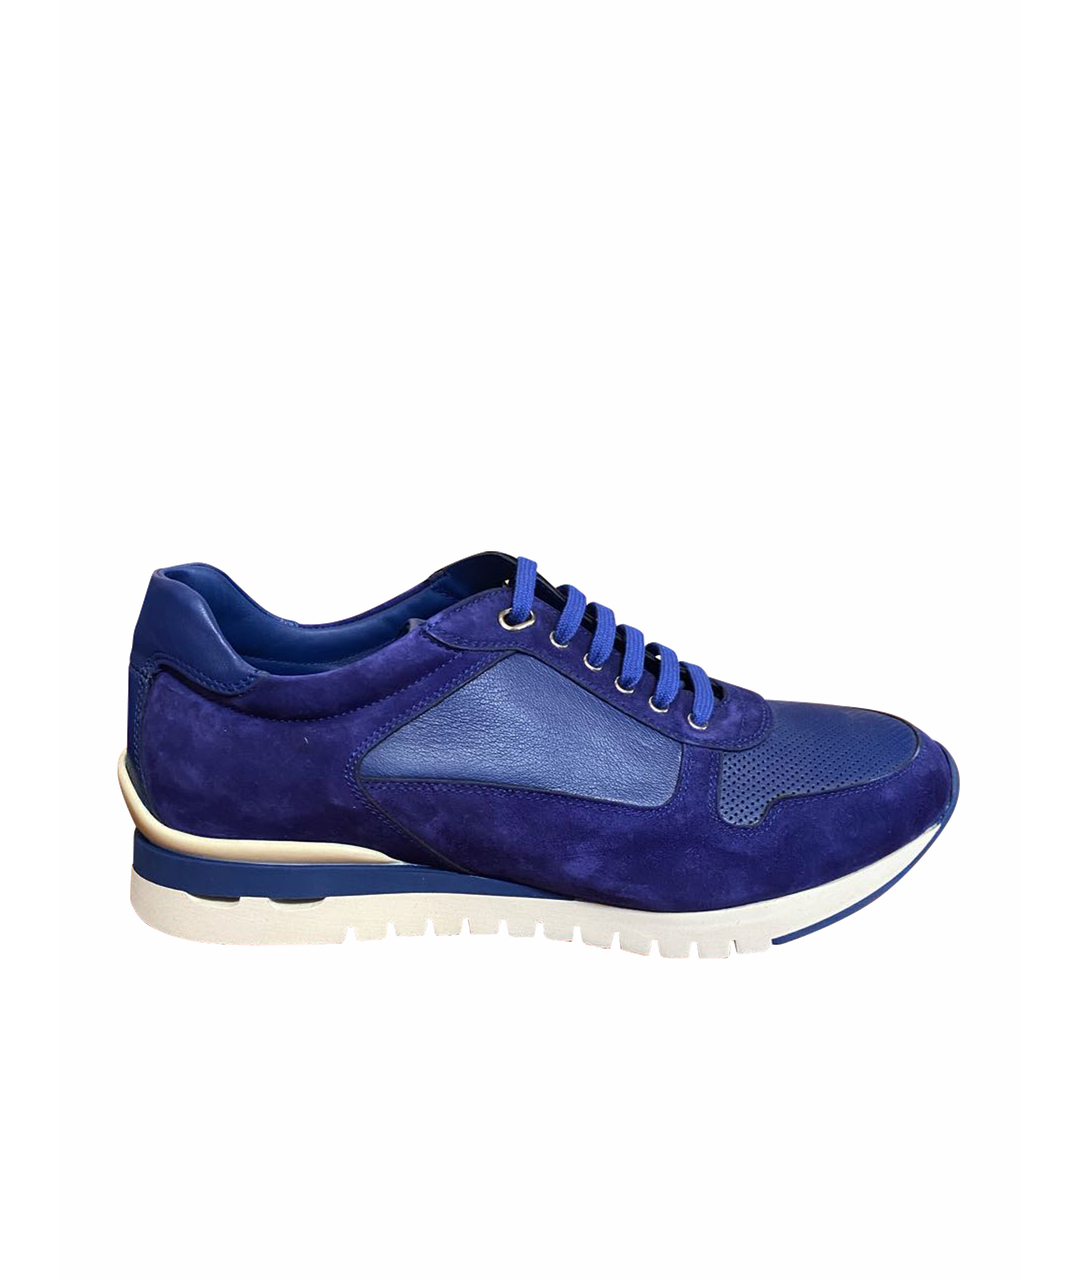 STEFANO RICCI Синие замшевые низкие кроссовки / кеды, фото 1